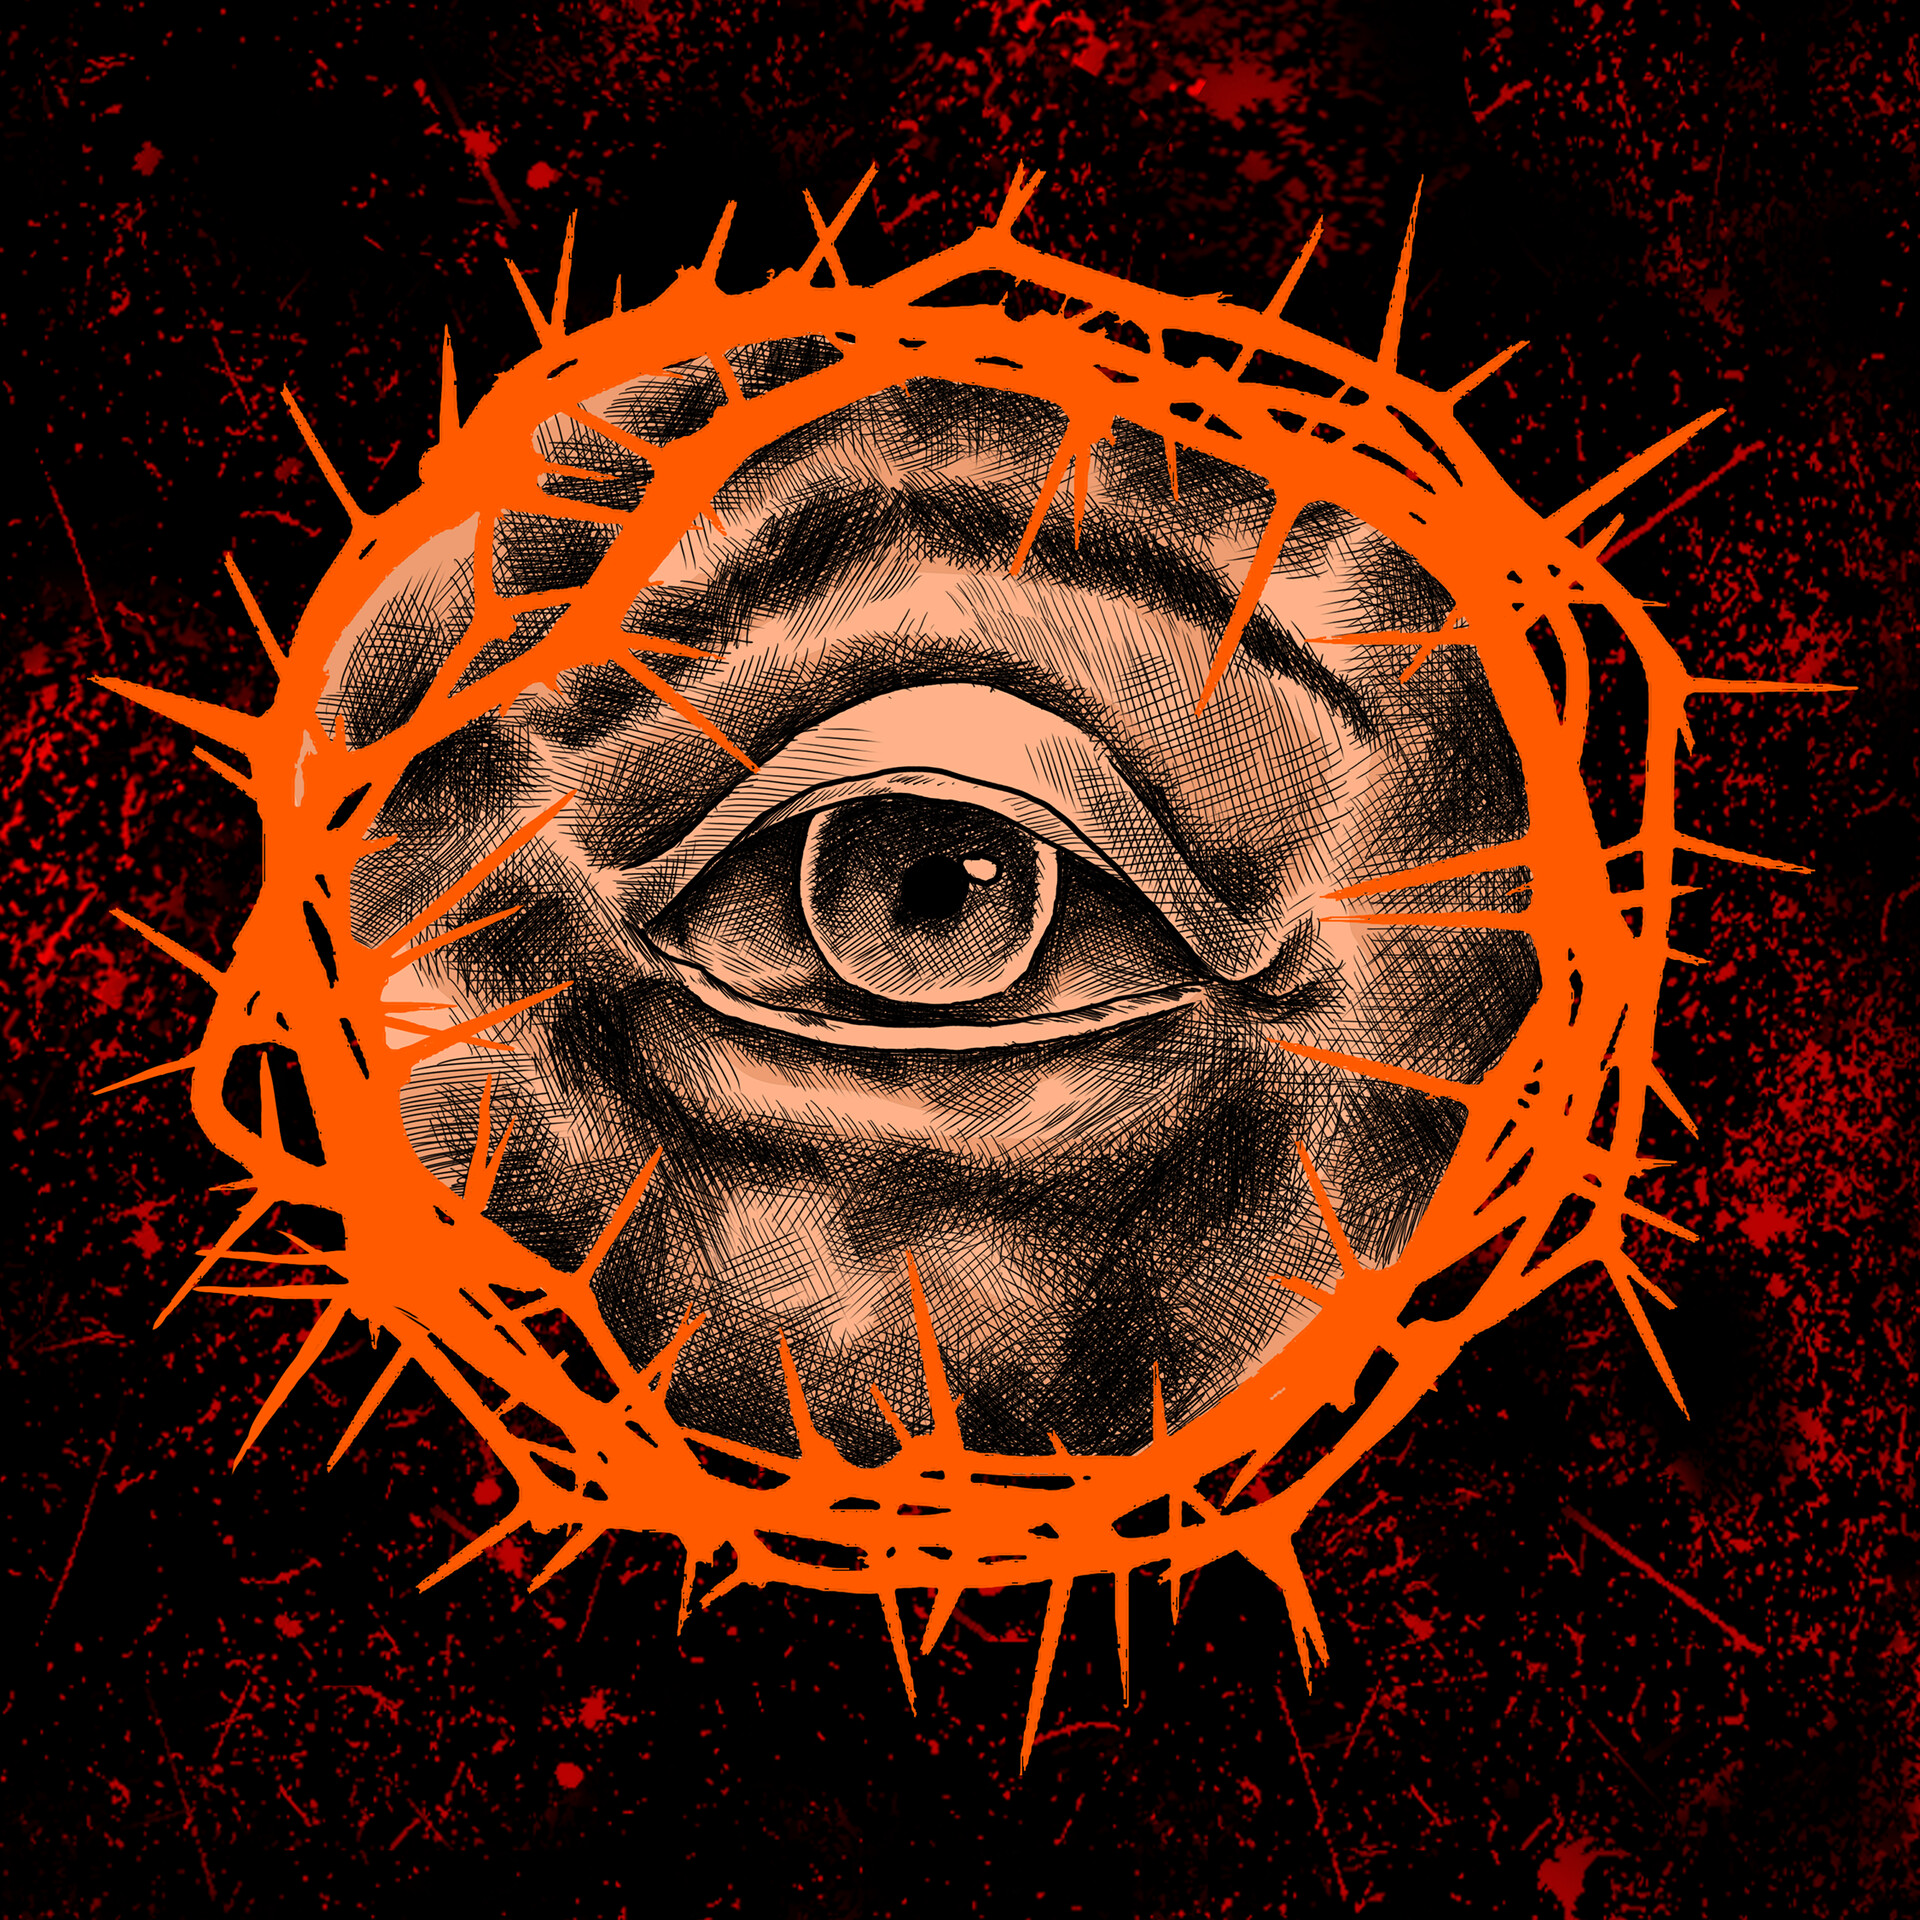 ArtStation - The eye of the beholder